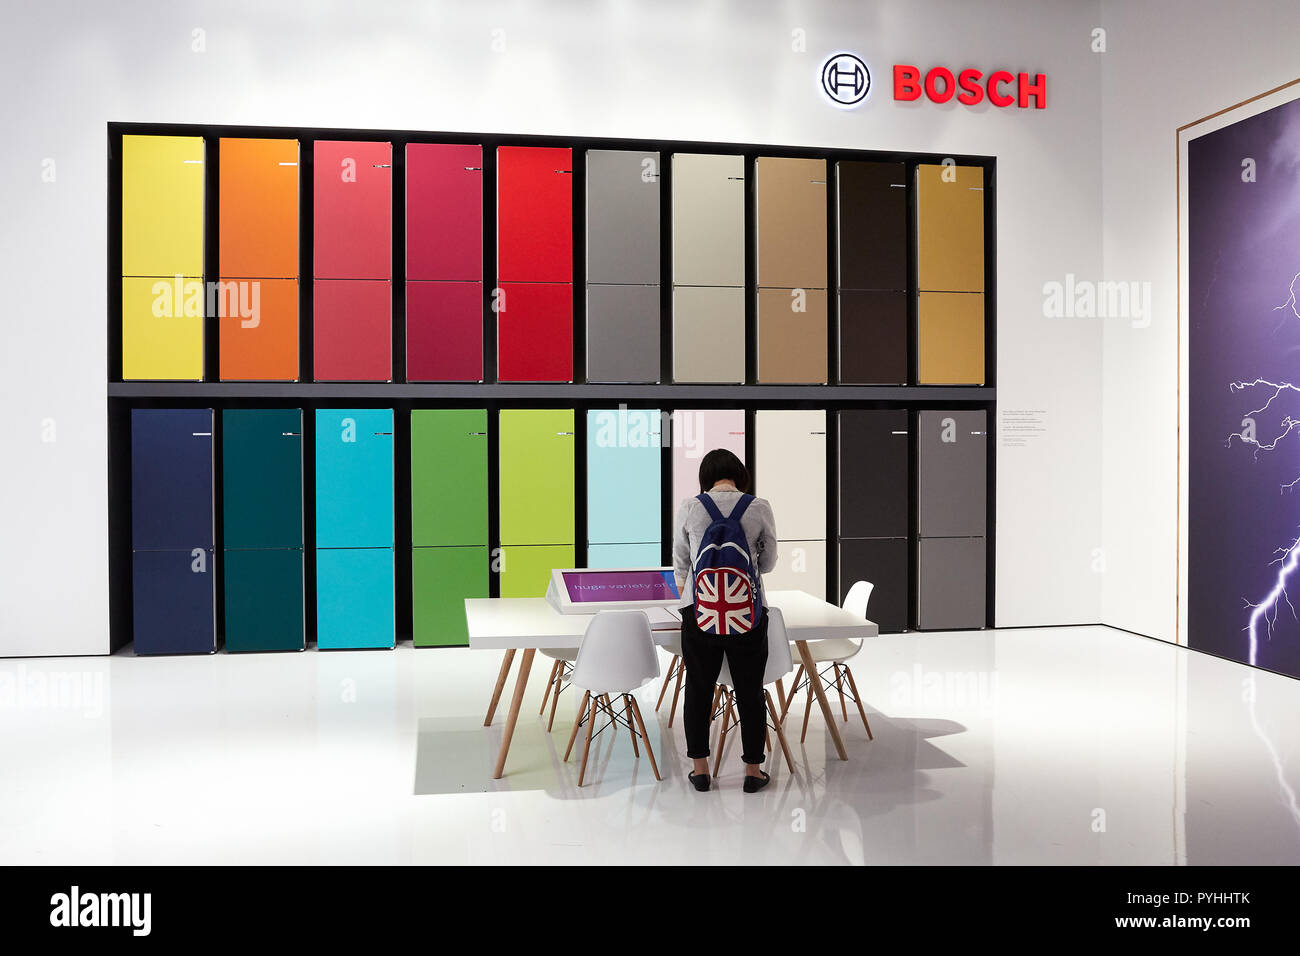 Berlino, Germania - La società tedesca Bosch presenterà le sue innovazioni nel settore dei frigoriferi a IFA 2018. Foto Stock